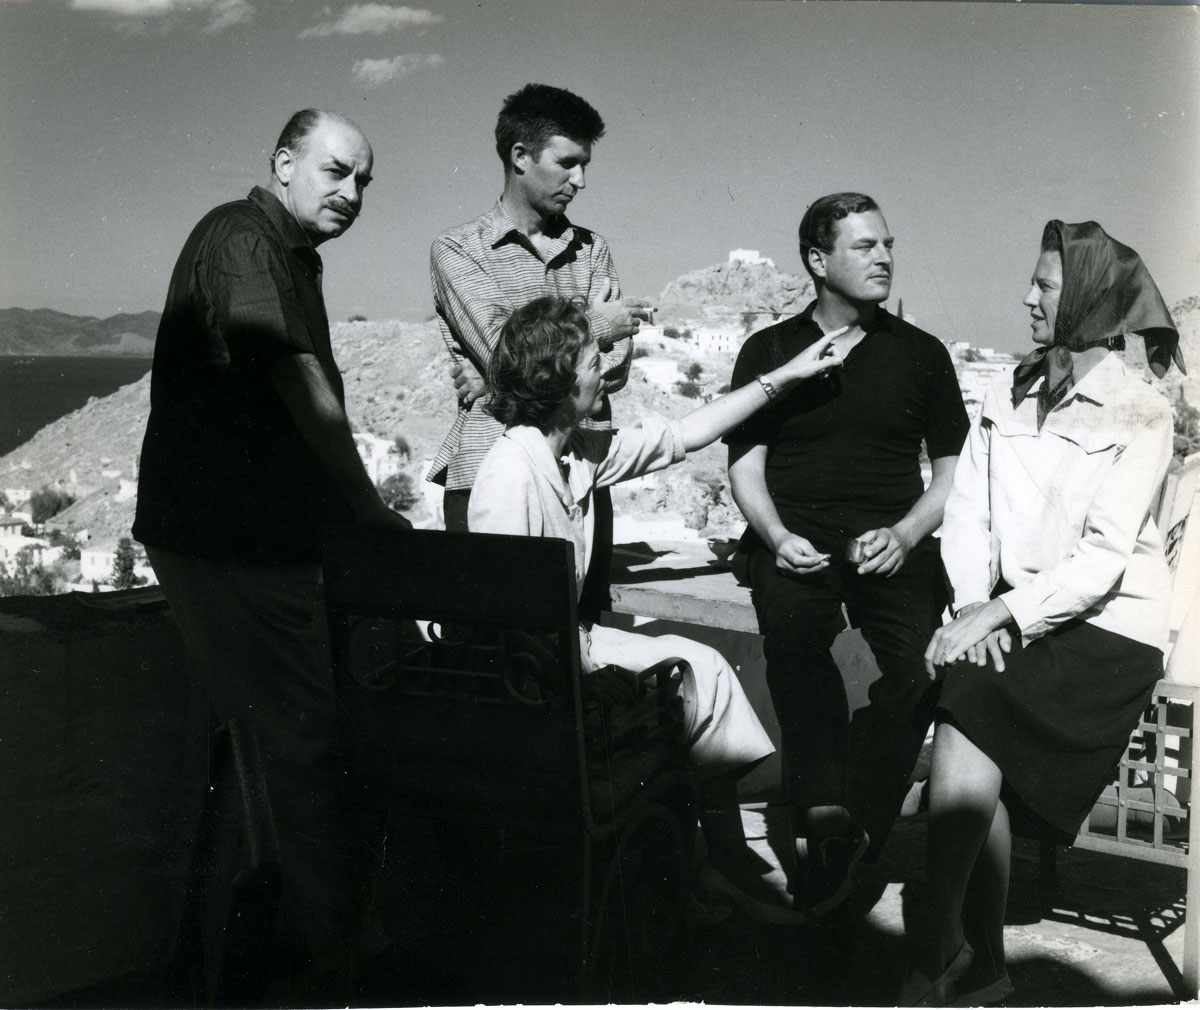 Νίκος και Barbara Γκίκα, John Craxton, Patrick Leigh Fermor και Joan Fermor (Ύδρα 1958). Φωτογραφία του Beny Roloff. Φωτογραφικό αρχείο Μουσείου Μπενάκη-Πινακοθήκης Γκίκα.